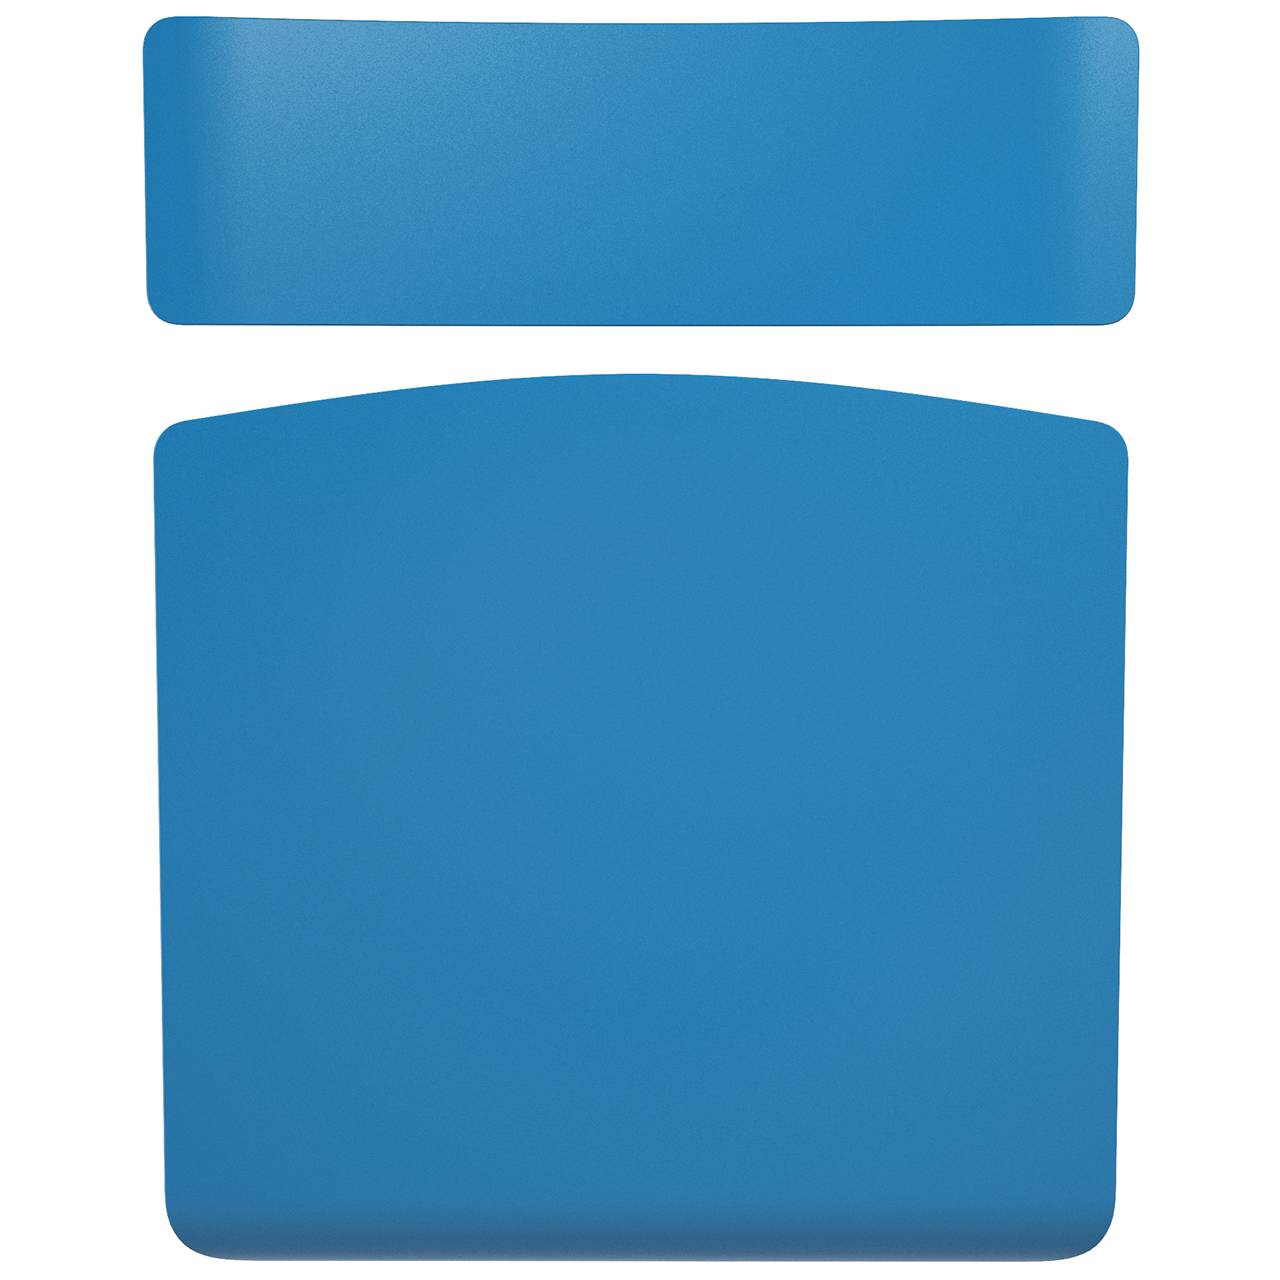 Стул ученический регулируемый (гр. 2-4, 3-5, 4-6 или 5-7) коричневый Синий 3-5 прямоугольная